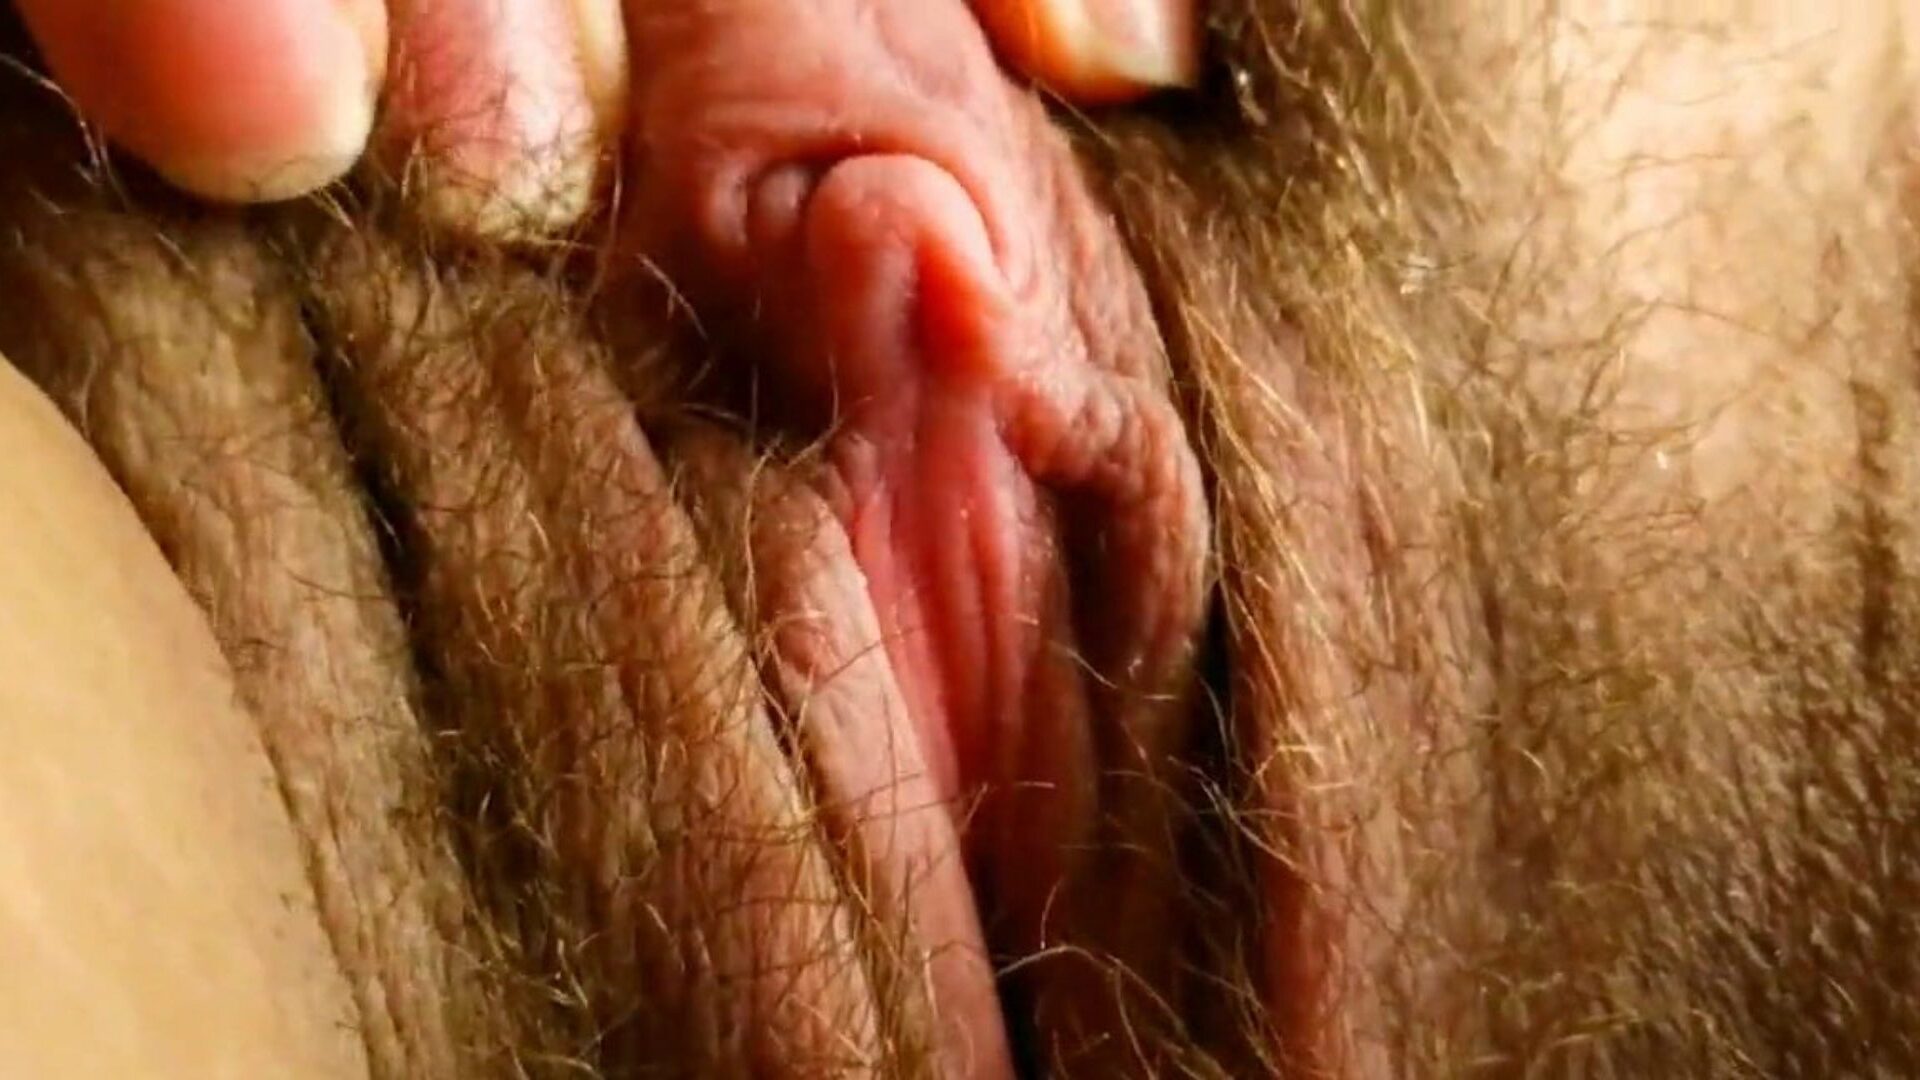 tämä on seksikkäin iso klitoris, jonka olet koskaan nähnyt: hd-porno, katso tämä on seksikkäin iso klitoris, jonka olet koskaan nähnyt videoleikkeestä xhamsterissa - perimmäinen kokoelma vapaita brasilialaisia ​​karvaisia ​​HD-kova pornografiaputkivideoita